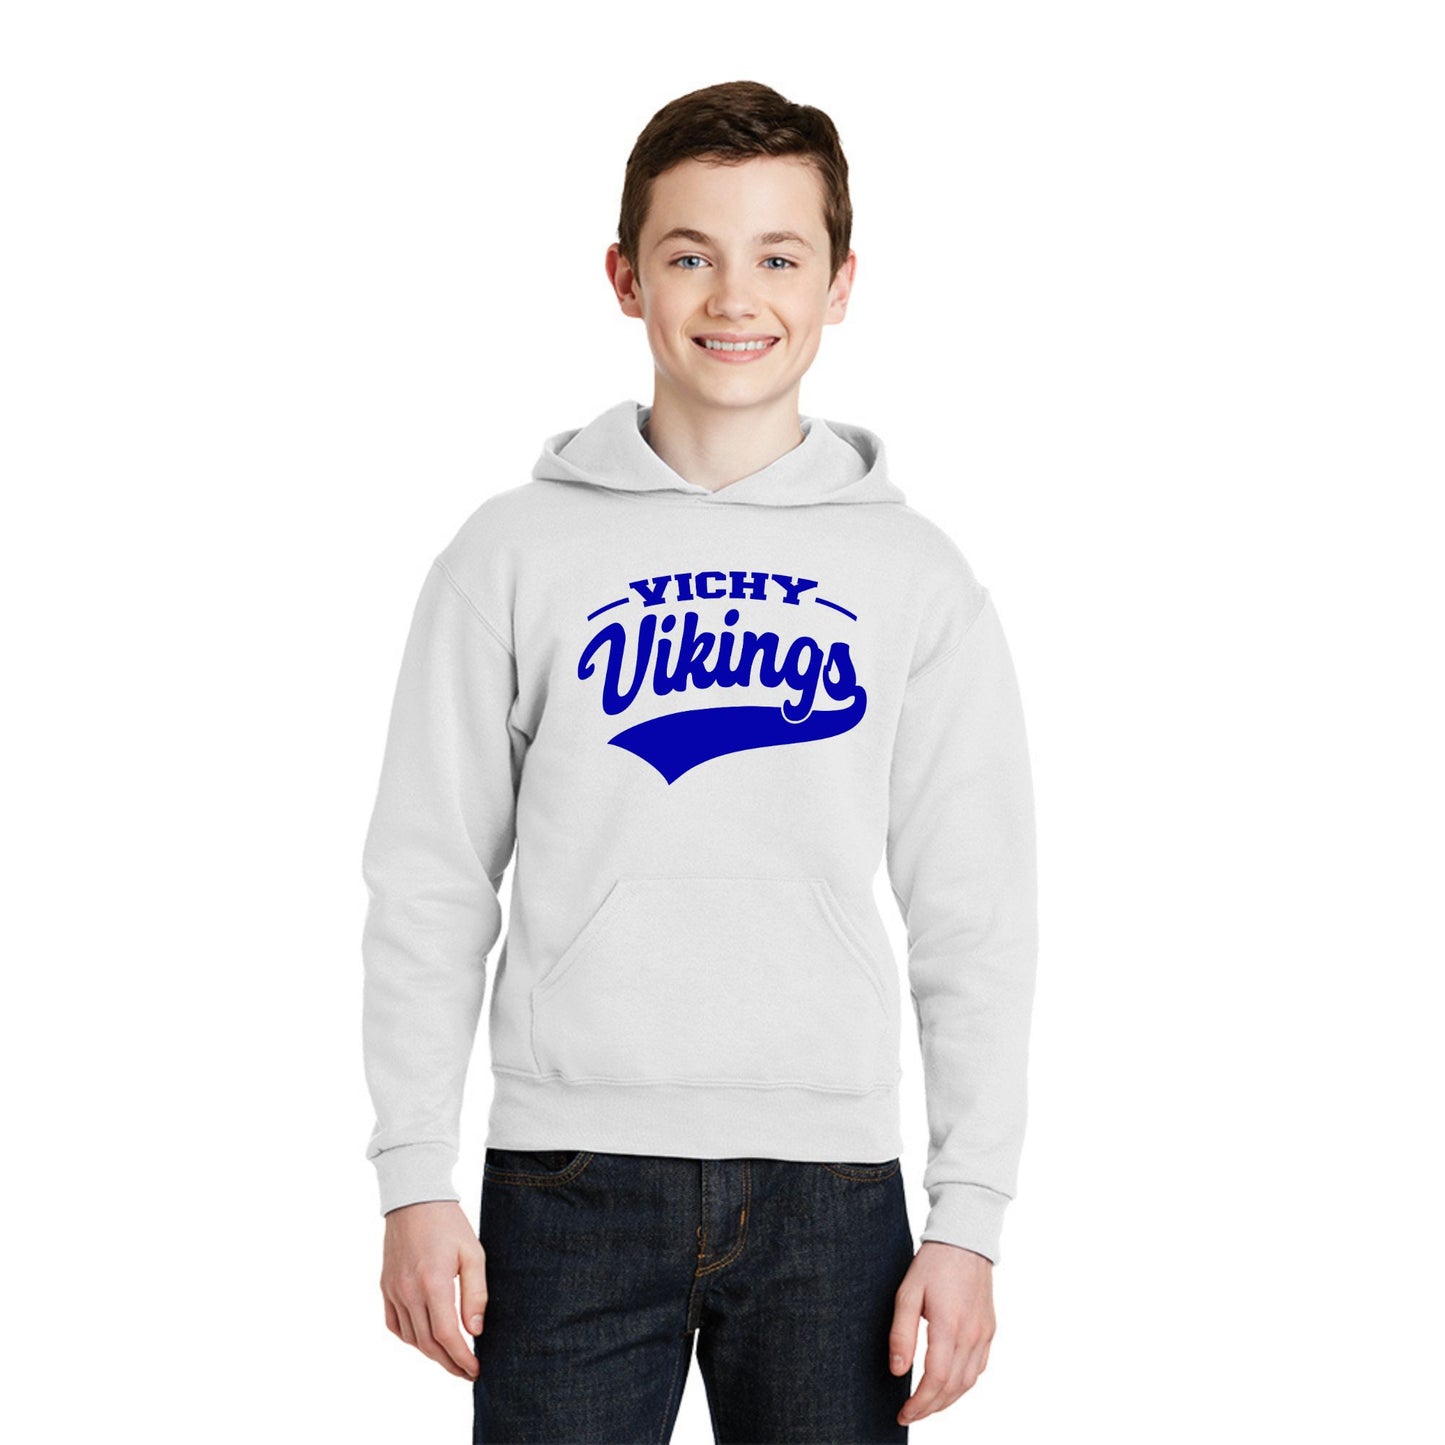 Vichy Vikings Youth Hoodie